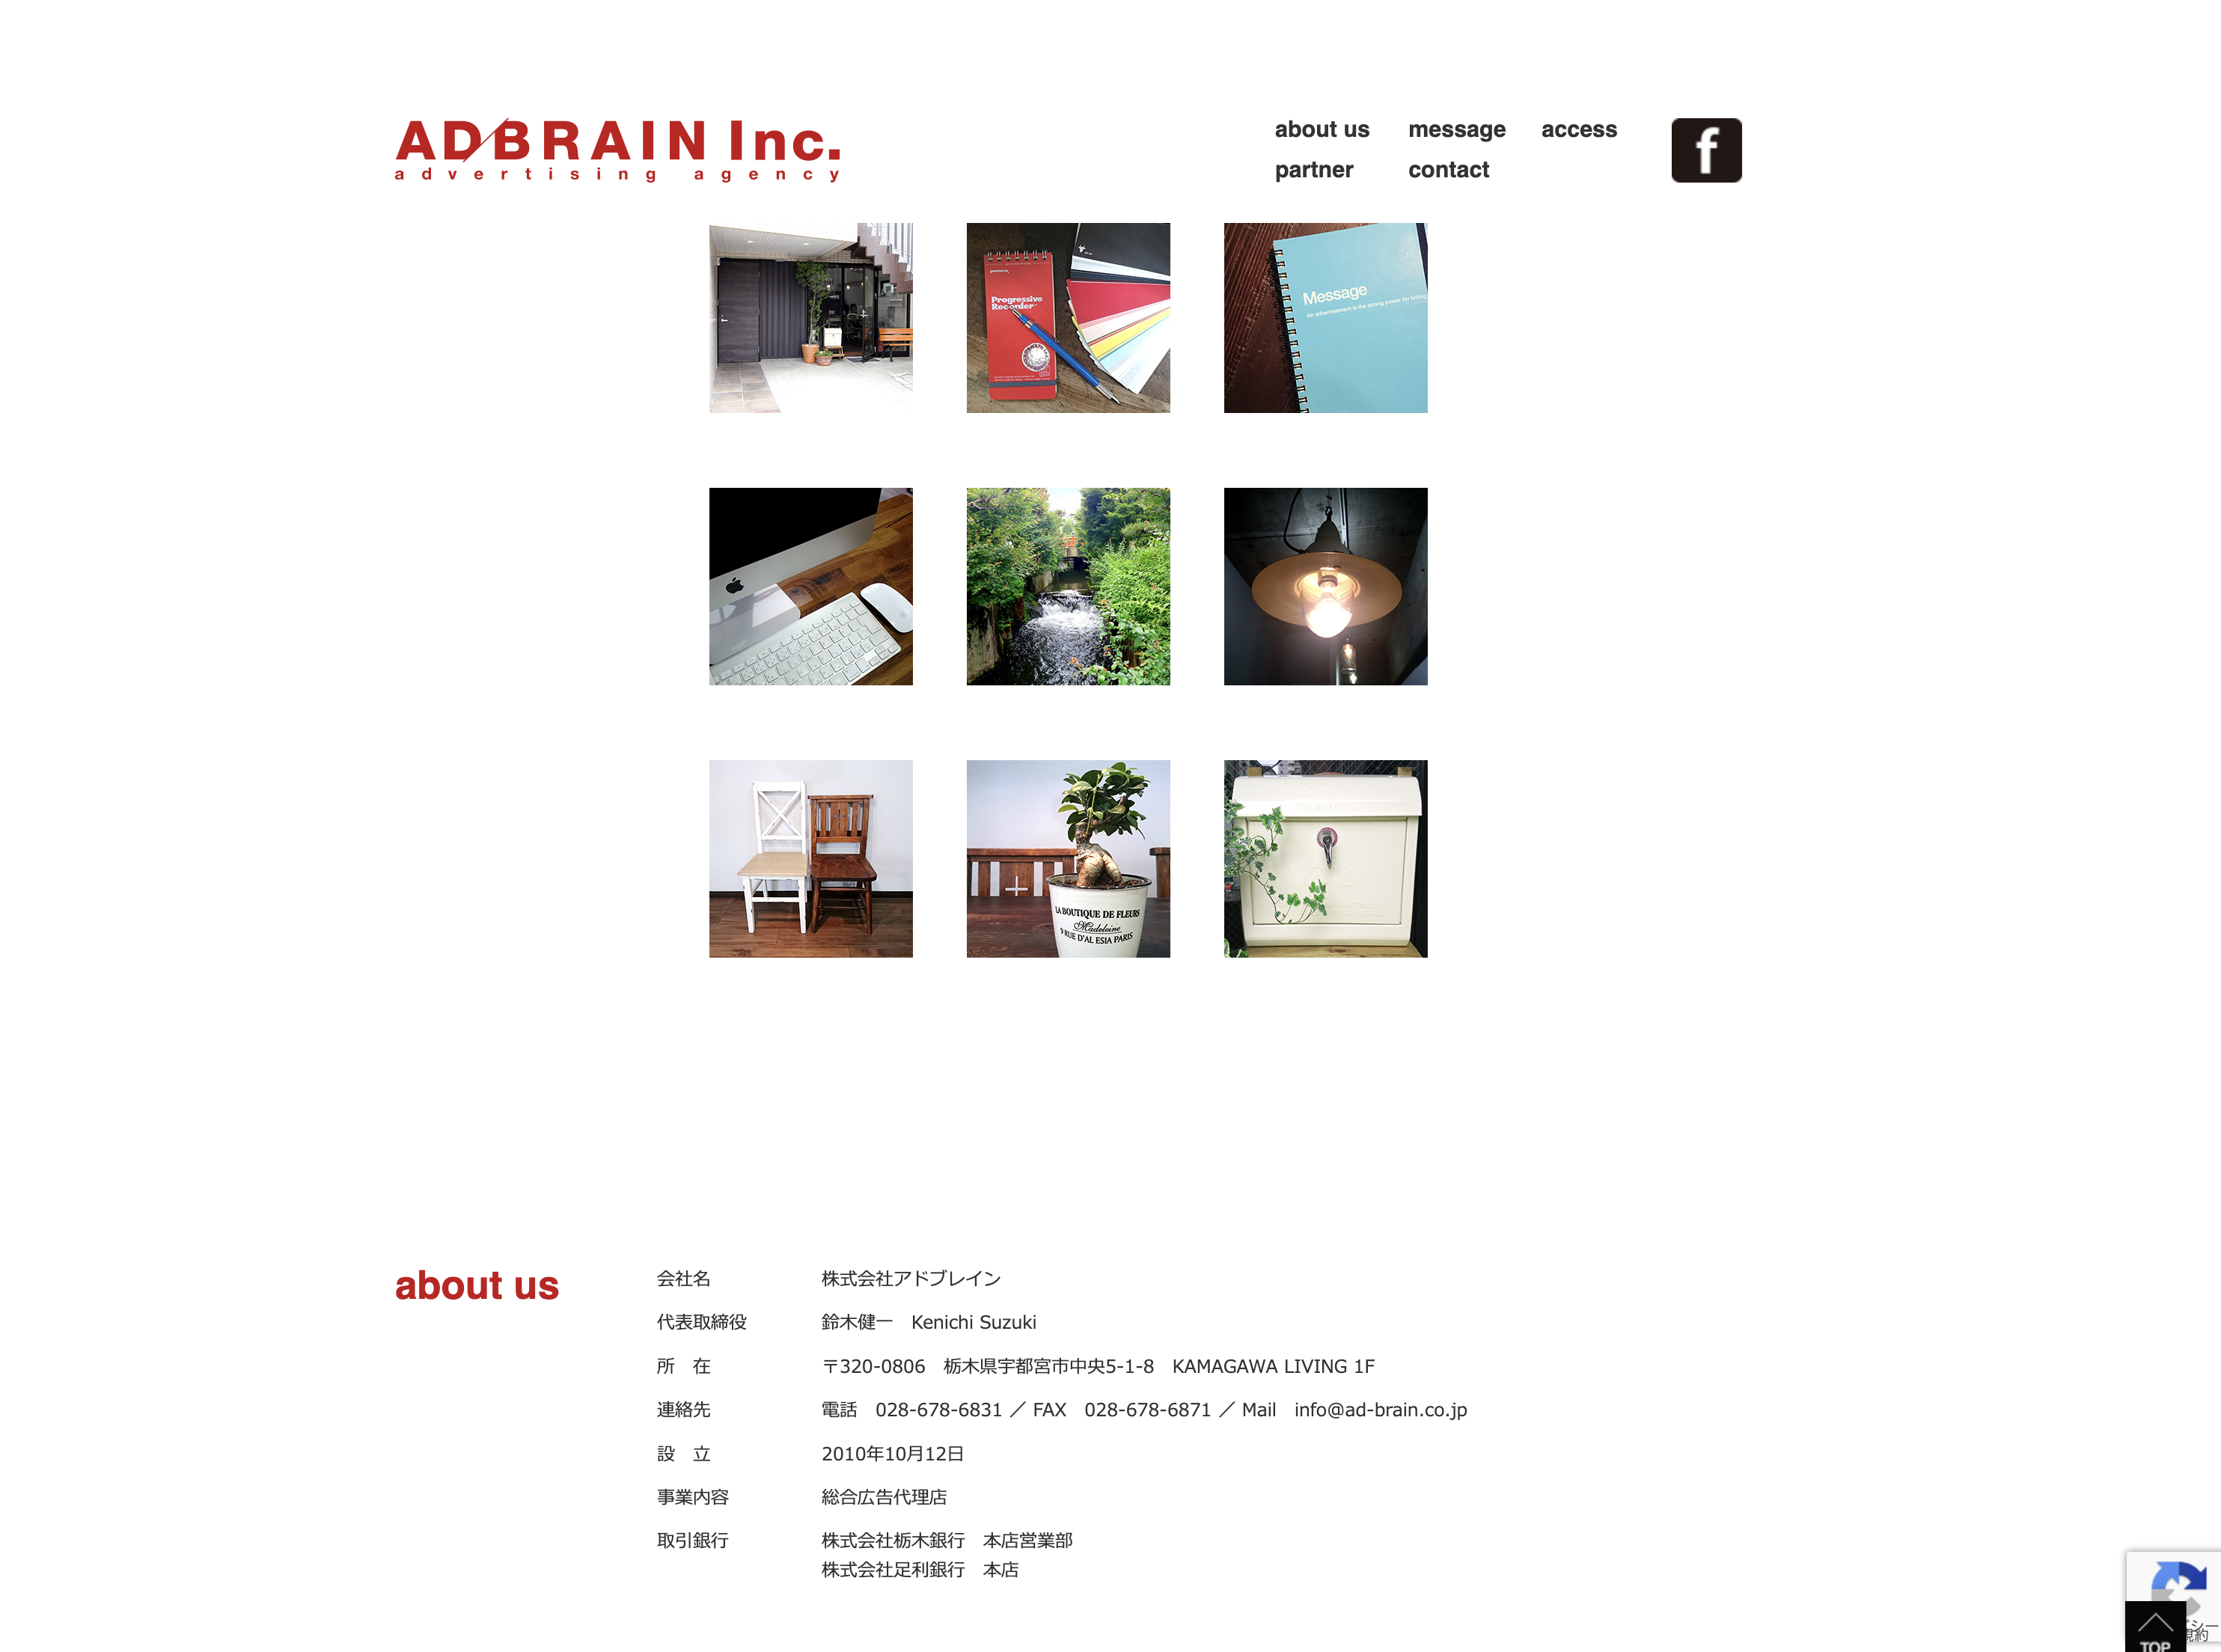 株式会社アドブレインの株式会社アドブレイン:デザイン制作サービス